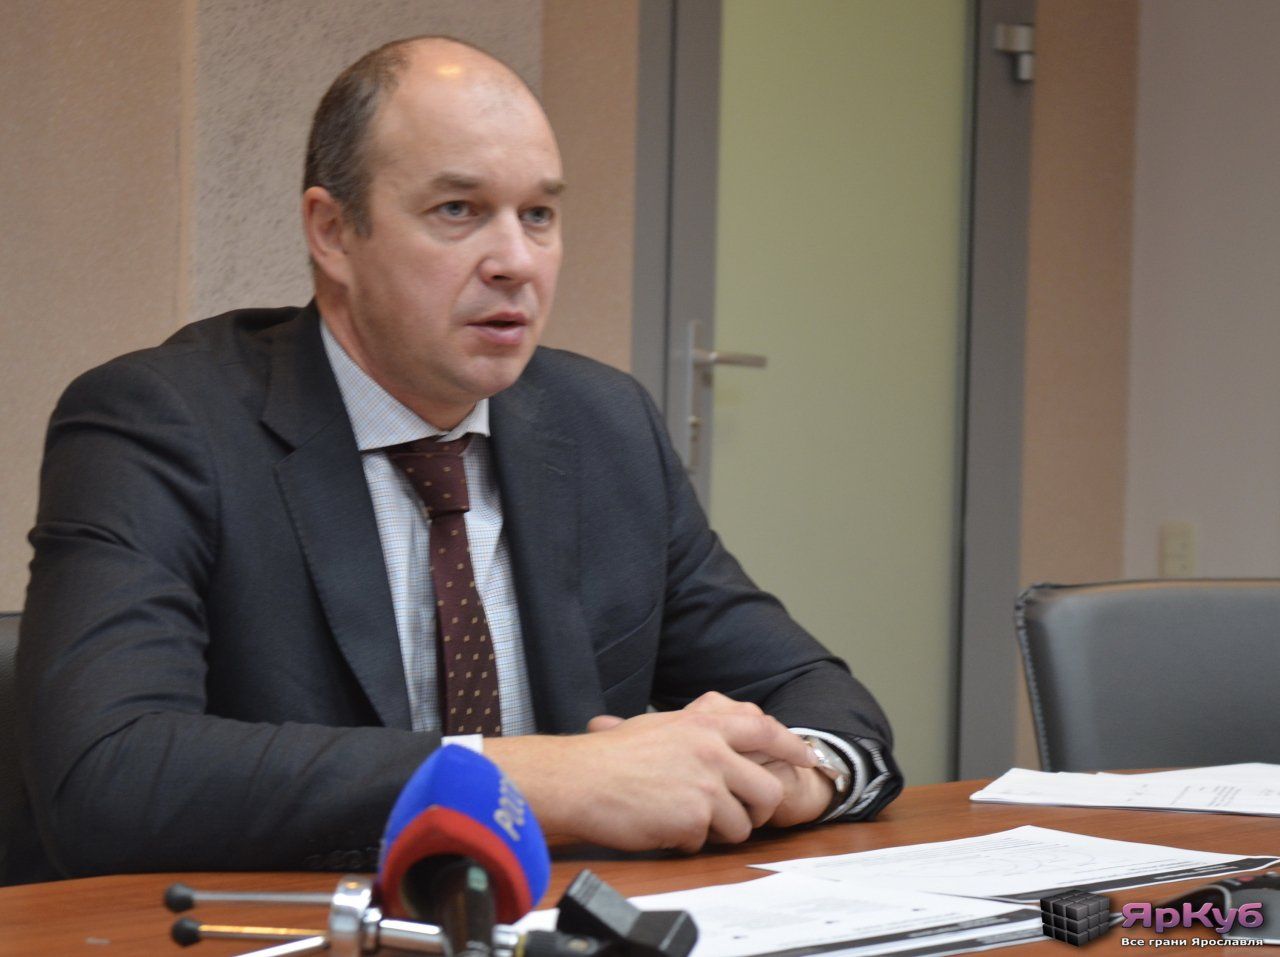 Эдуард Лысенко: "Региональная власть не против создания двух опорных вузов"